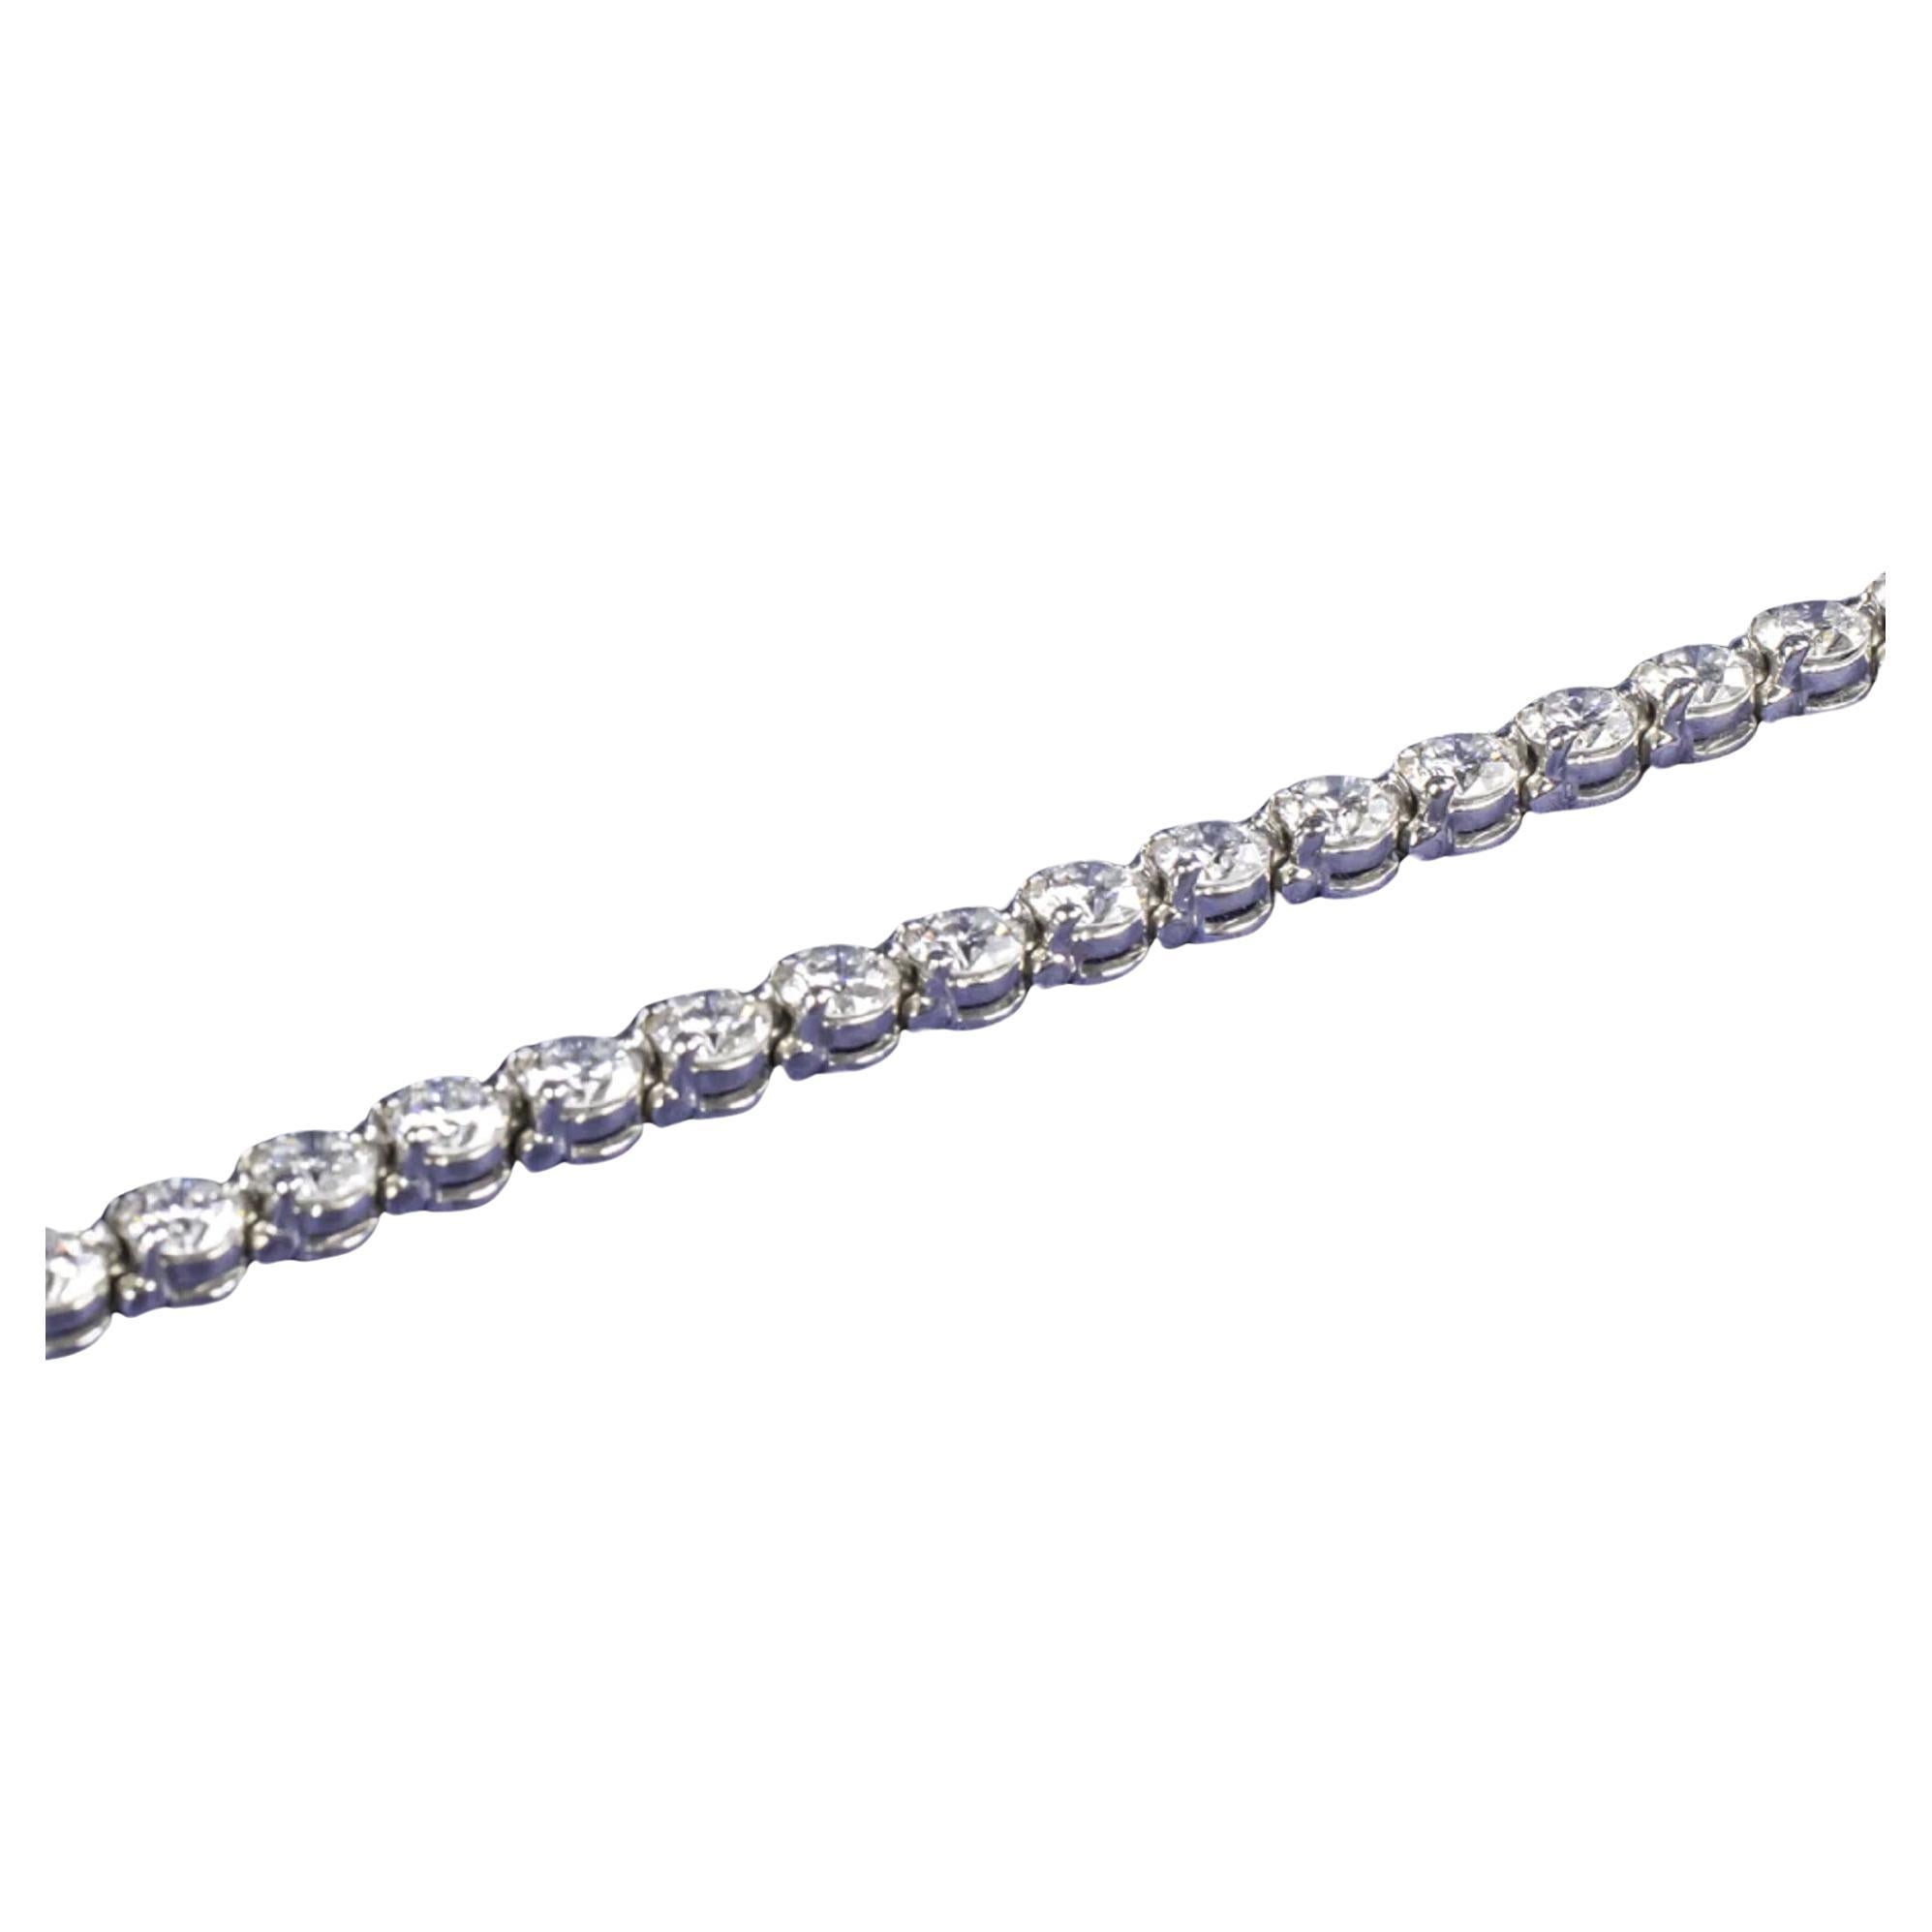 Ce bracelet en diamant authentique de Tiffany est substantiel et d'une qualité absolument fantastique ! Un bracelet de tennis en diamants est un look qui a fait ses preuves et qui sera toujours à la mode ! 
Faits marquants :
- 4.49 carats de